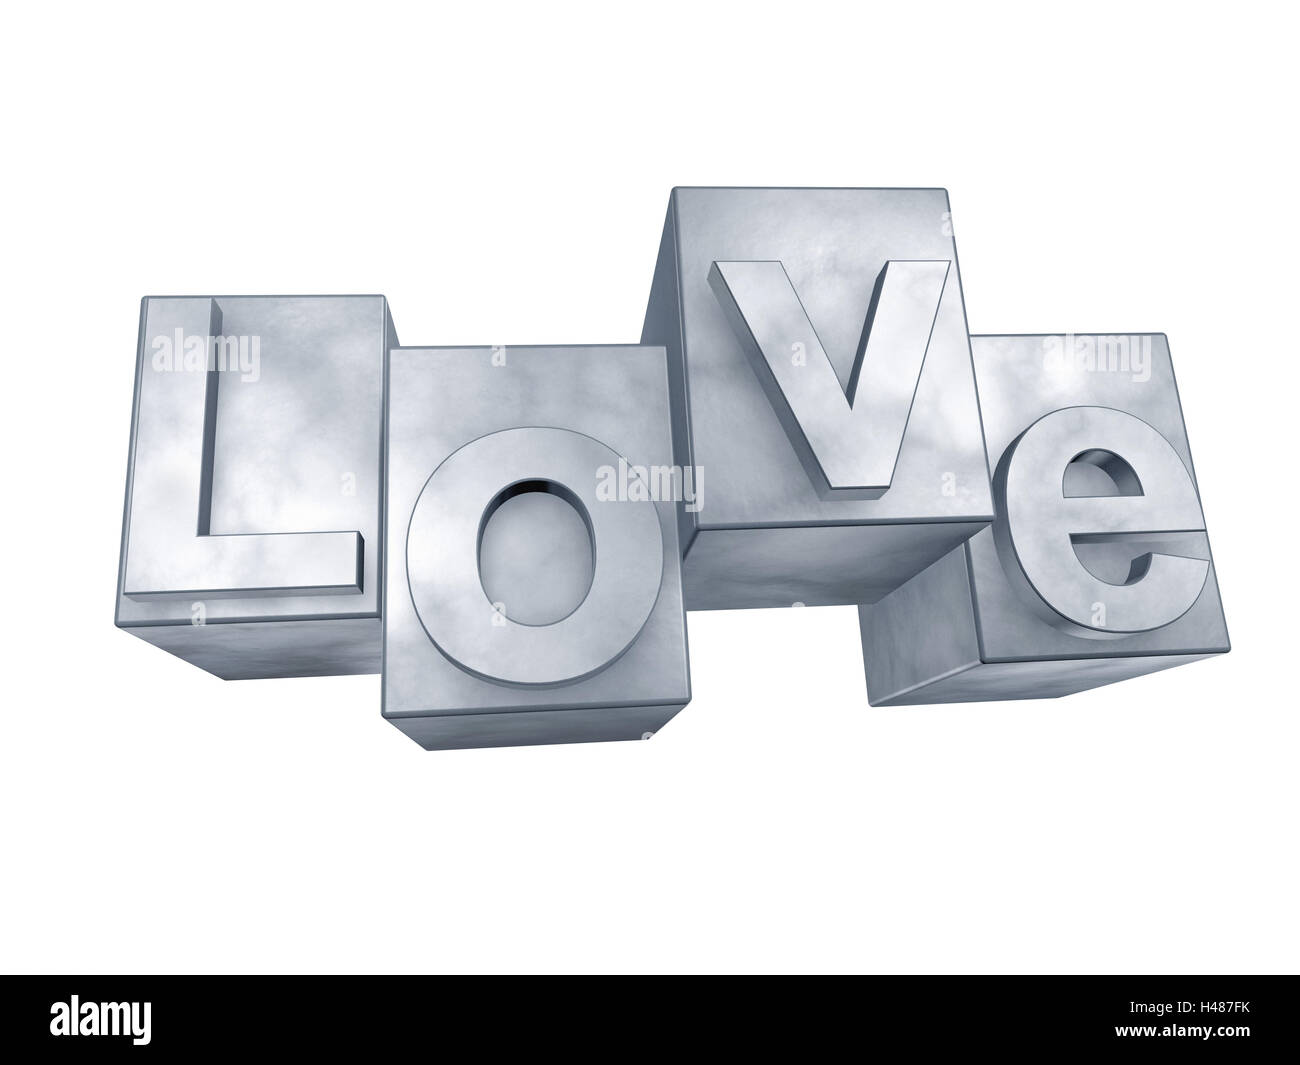 L'amour, gris, fond blanc, mot, lettre, 3-D, de la technologie, effet, police de caractère, idée, conception, personne, Frei's plate, l'amour, Banque D'Images